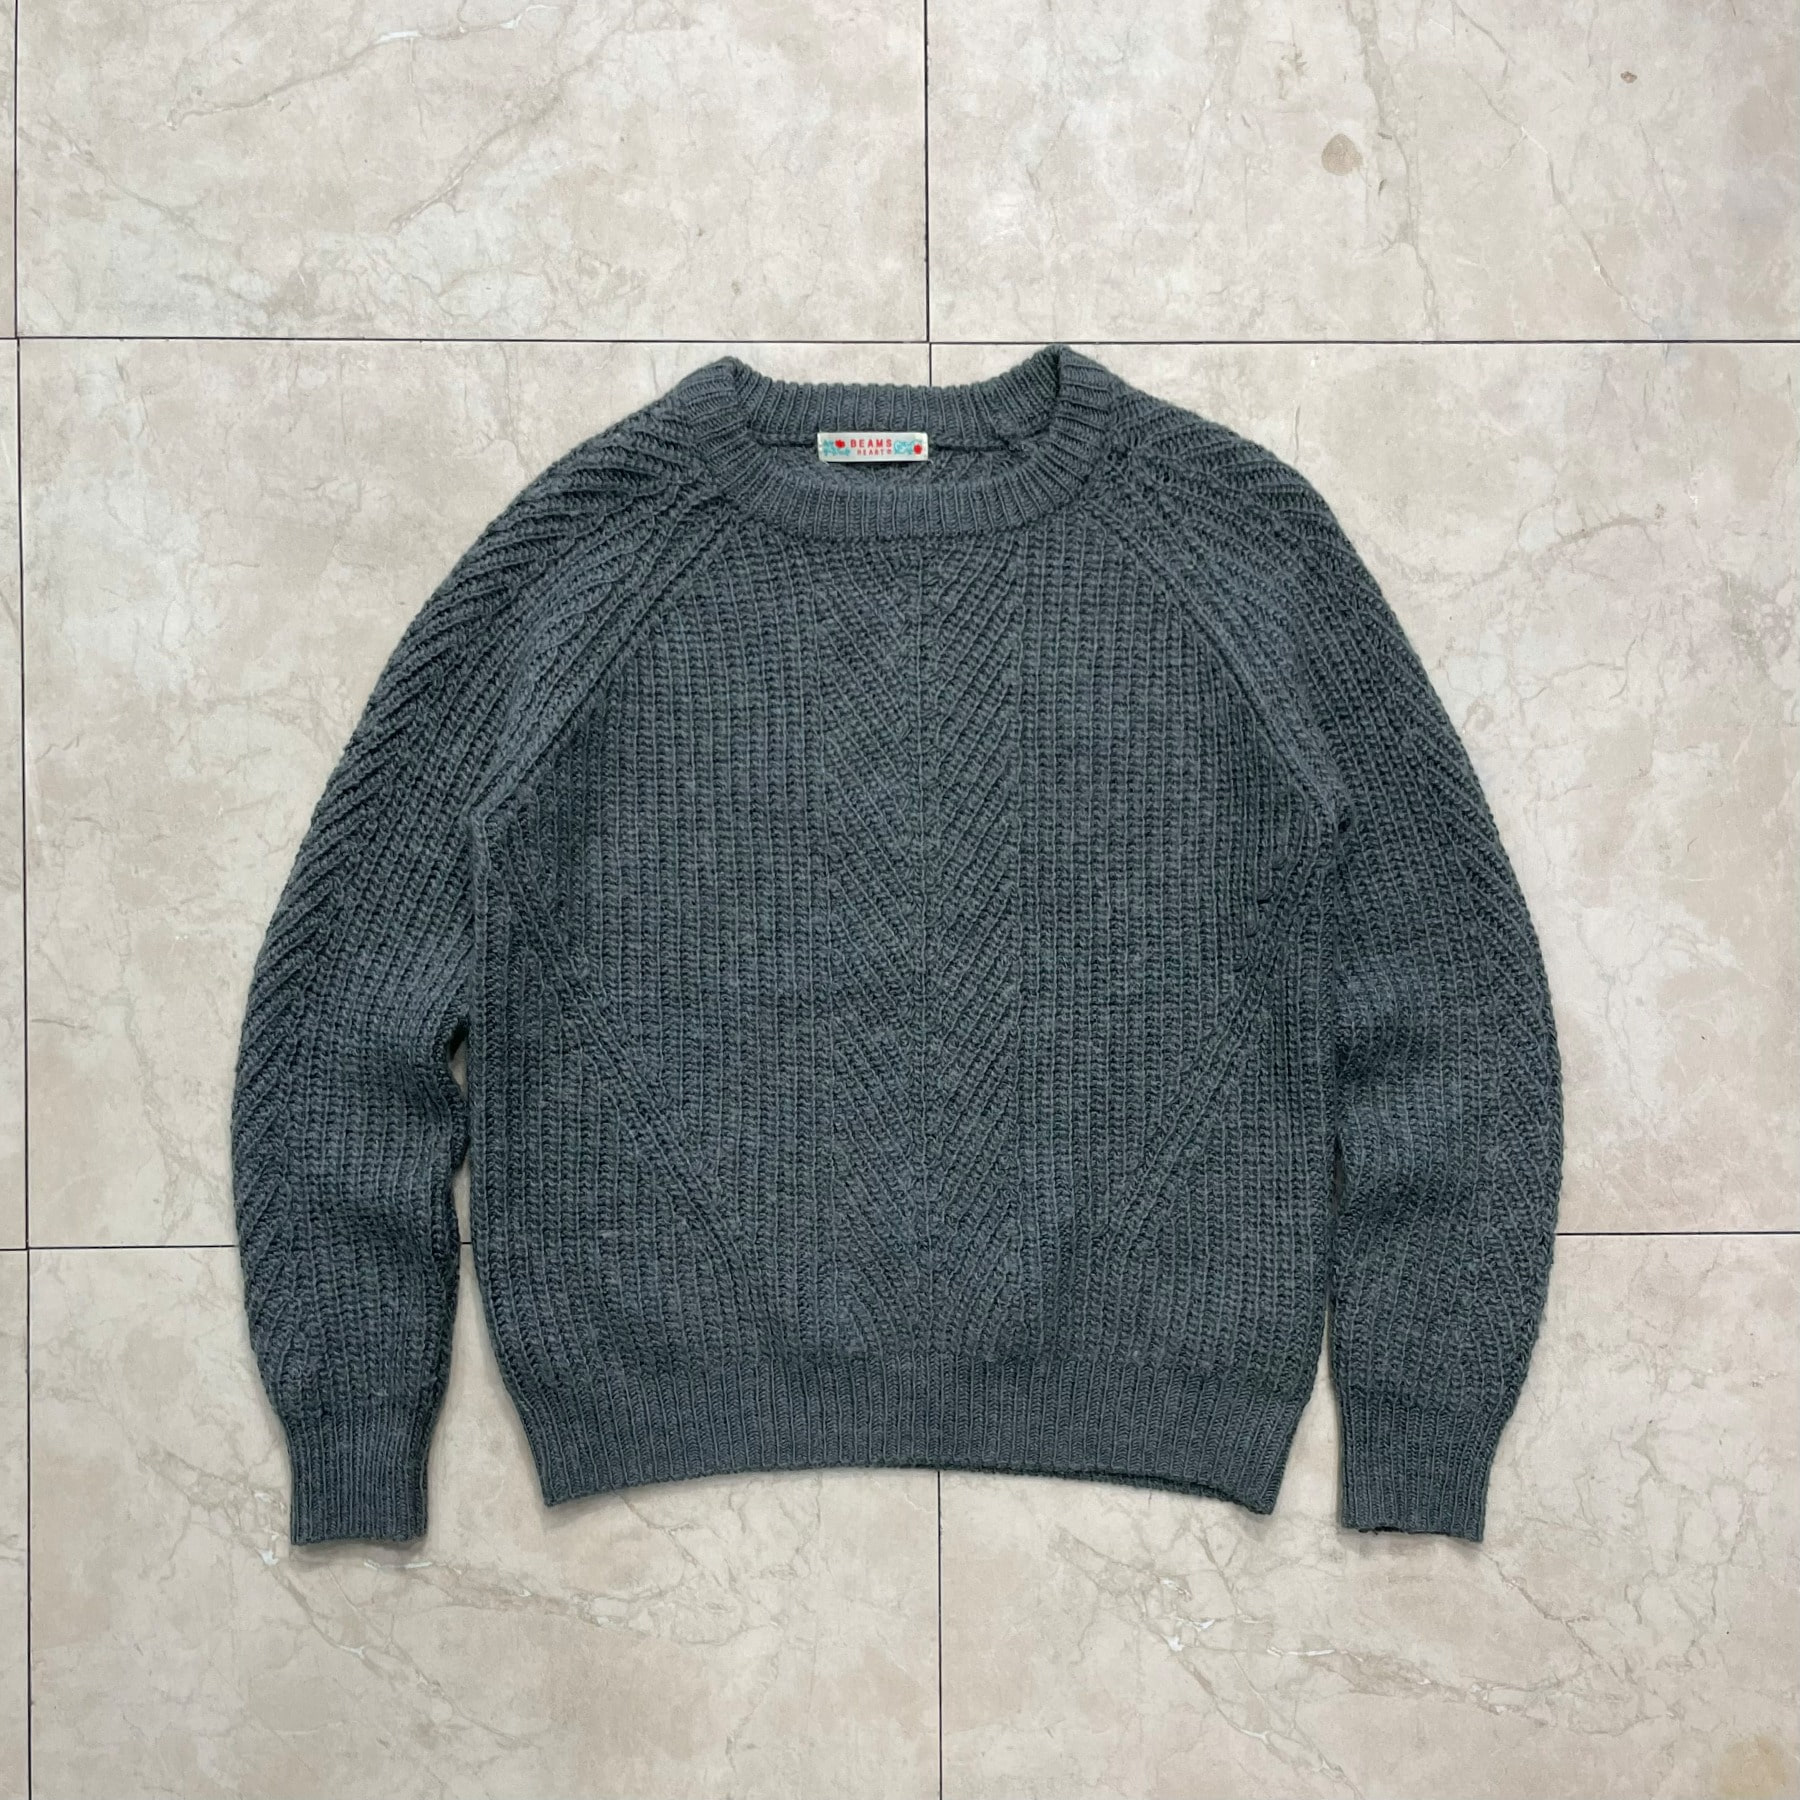 Beams Heart Acrylic Sweater - 90